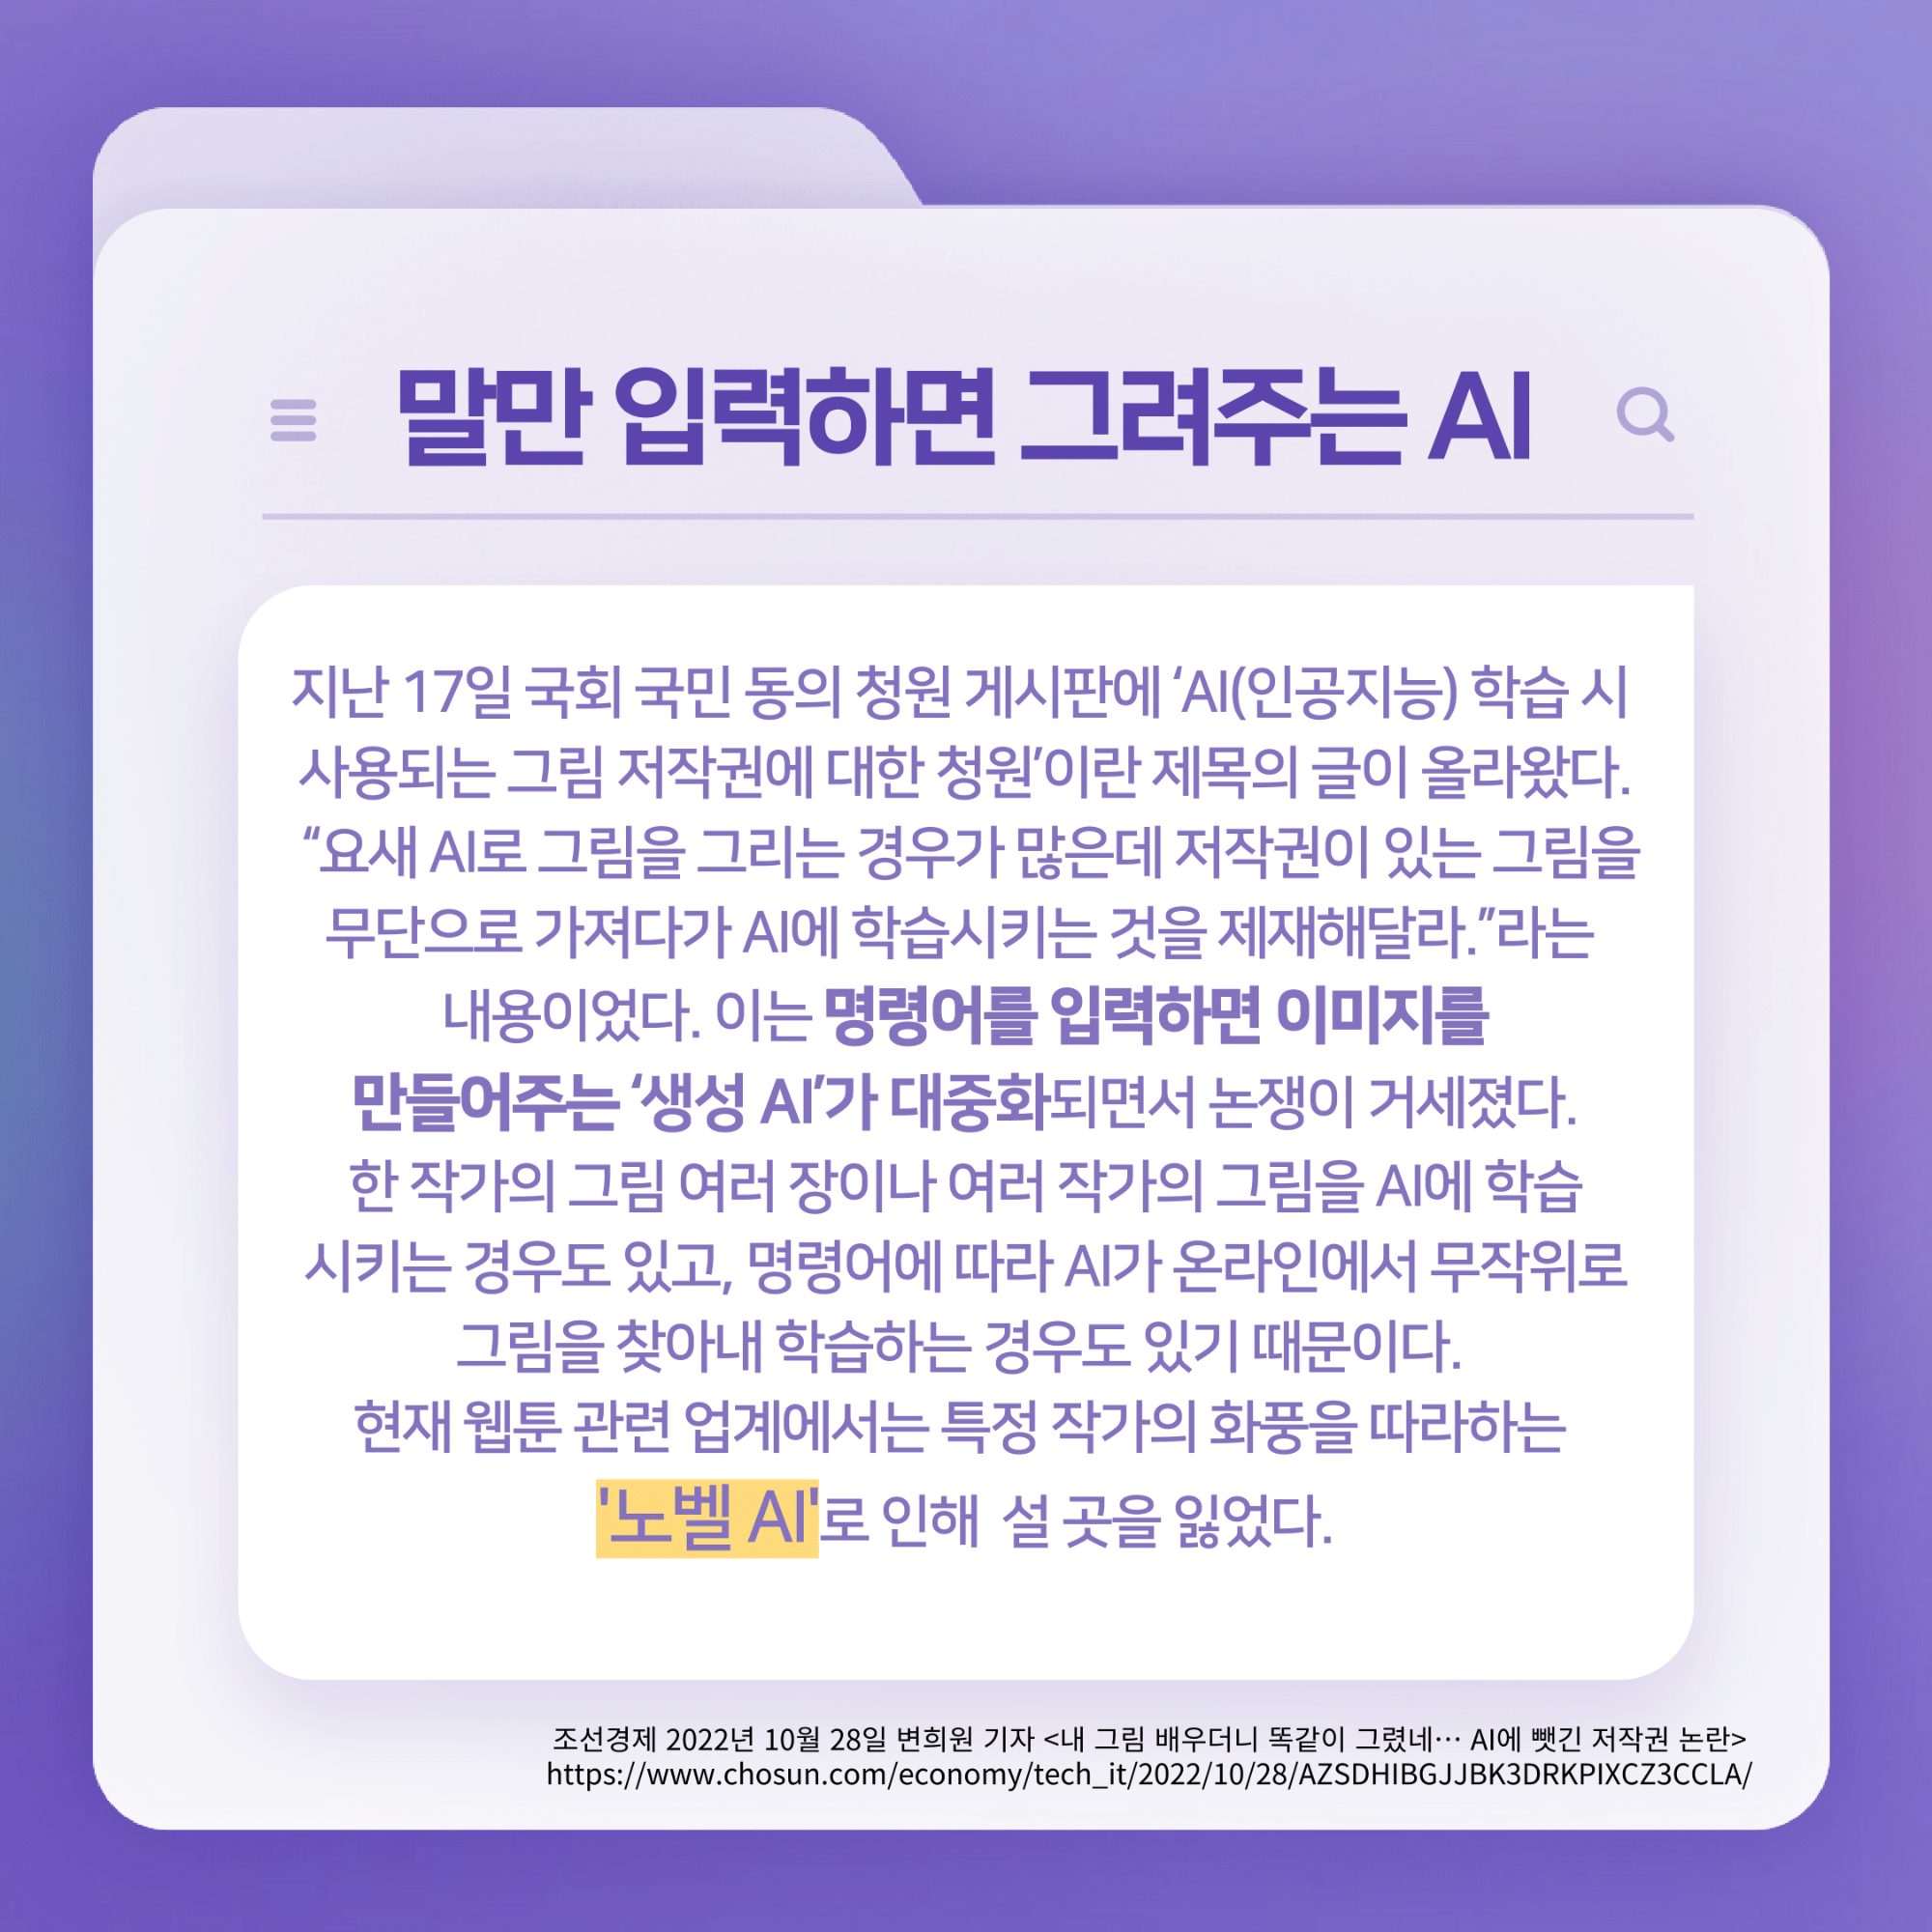 167호 K-웹툰의 노동 문제 심각성-2.png